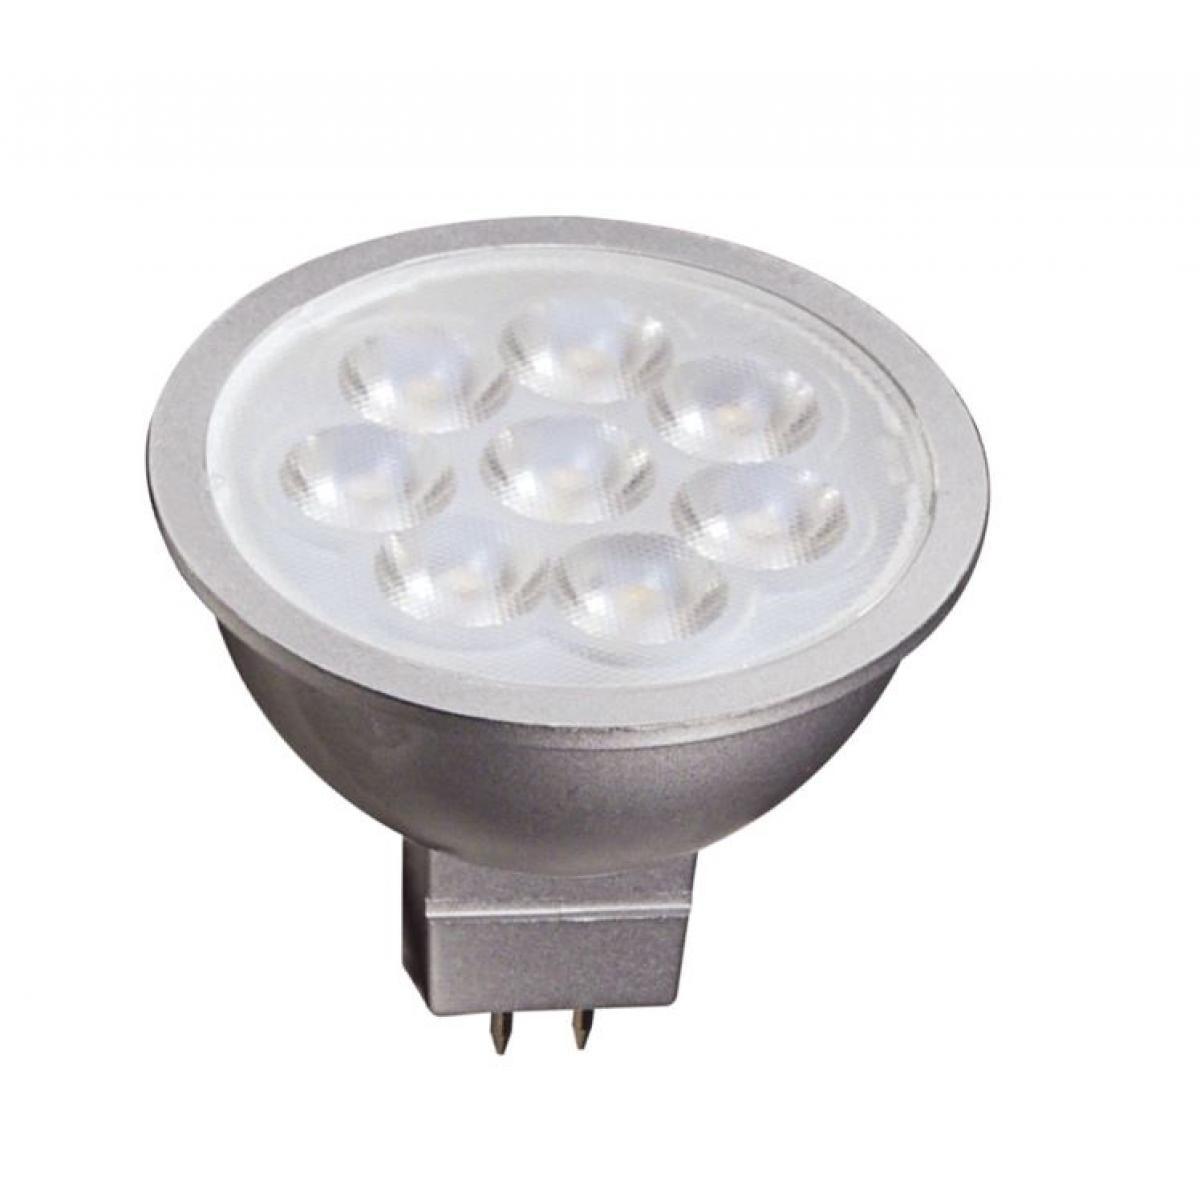 MR16 Reflector LED bulb, 6 watt, 450 Lumens, 3000K, GU5.3 Base, 25 Deg. Flood - Bees Lighting